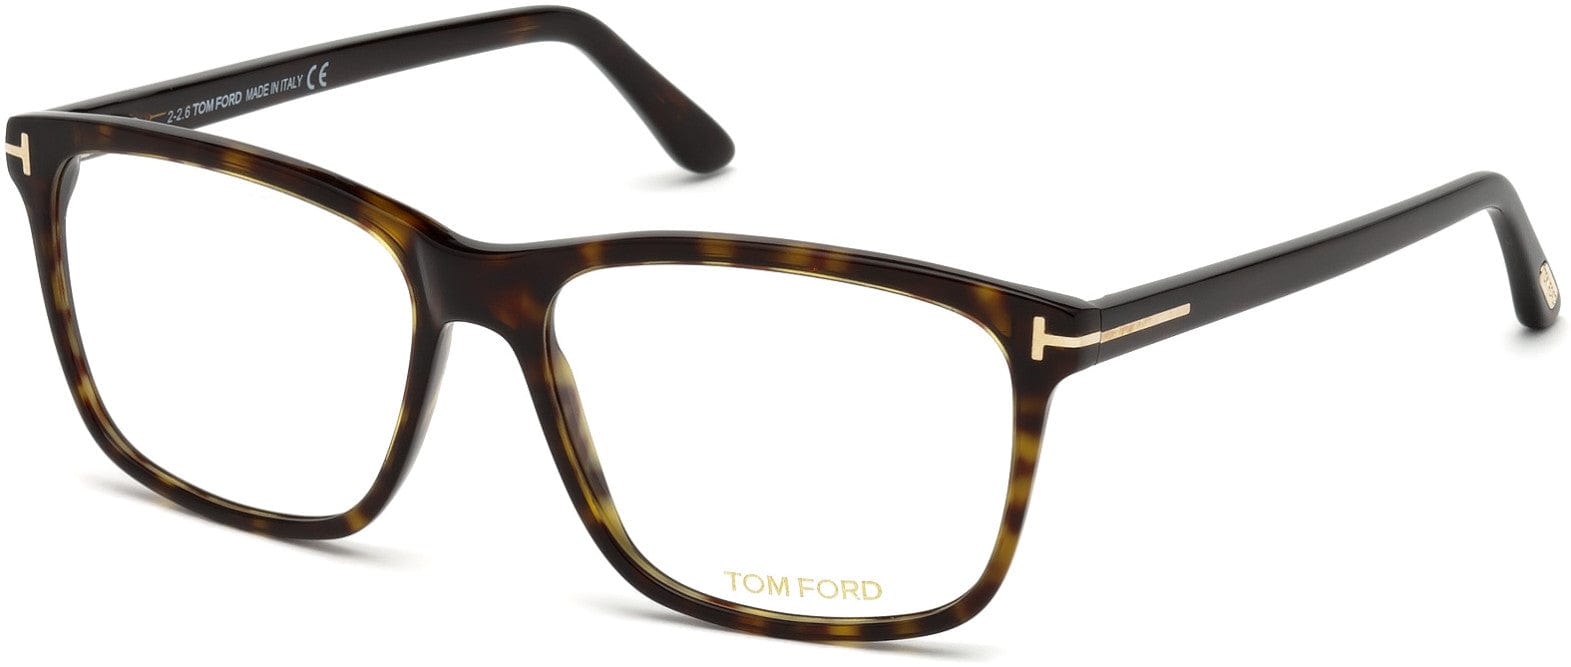 Tom Ford FT5479-B Geometric Eyeglasses 052-052 - Classic Dark Havana/ Blue Block Lenses